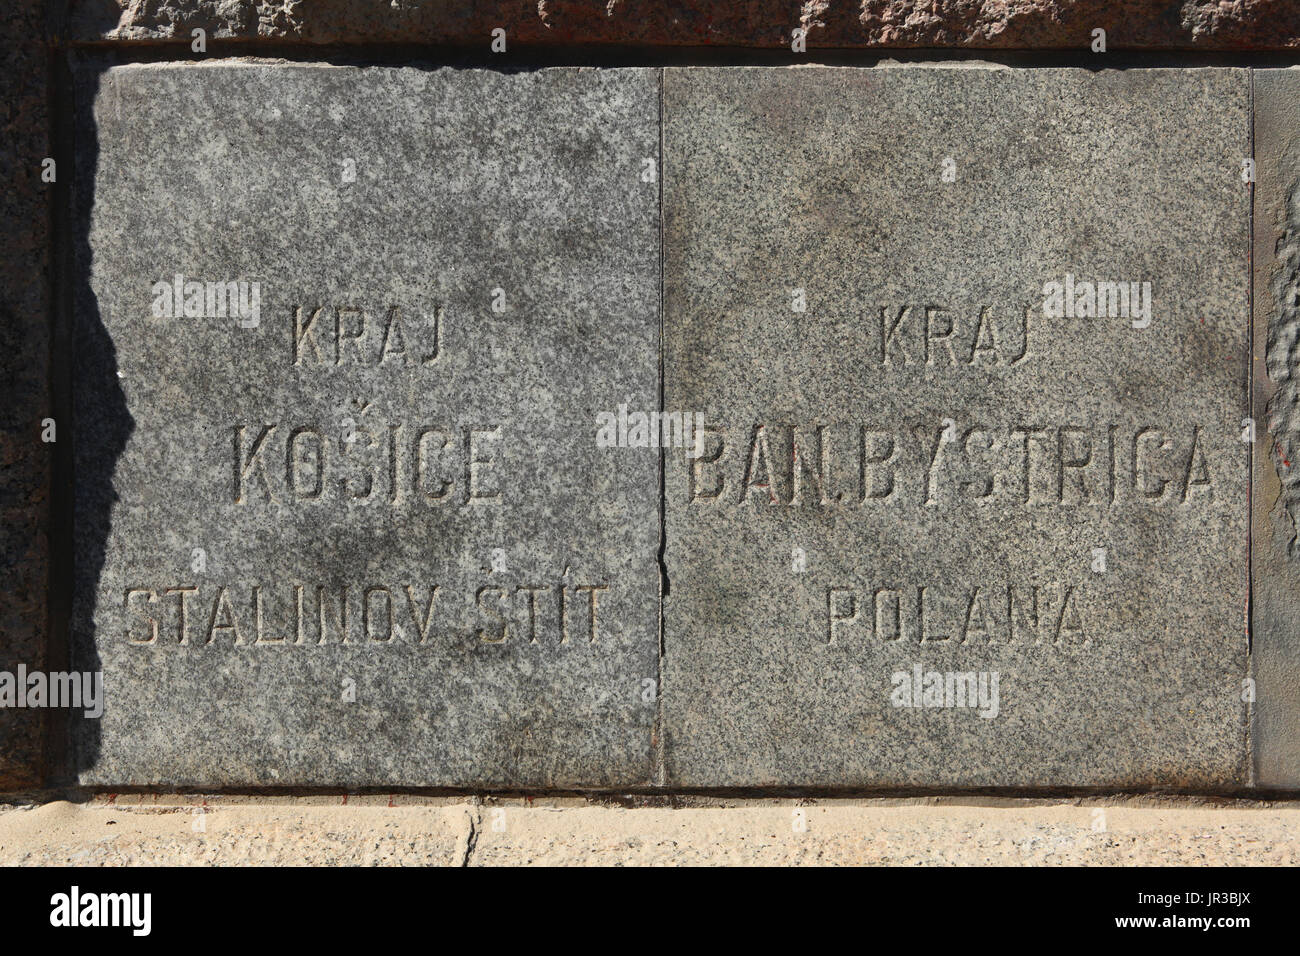 Überlebenden Grundsteine des Denkmals für den sowjetischen Diktator Joseph Stalin in Letna Park in Prag, Tschechien. Der Grundstein vom Gipfel des Stalinov štít (Stalin Peak) in der hohen Tatra aus Košice (Kaschau) Region, jetzt Gerlachovský štít, der höchste Berg in der Slowakei, sieht in der linken Seite, während der Grundstein von Poľana in Banská Bystrica Region, Slowakei, in der rechten Ecke zu sehen ist. Stockfoto